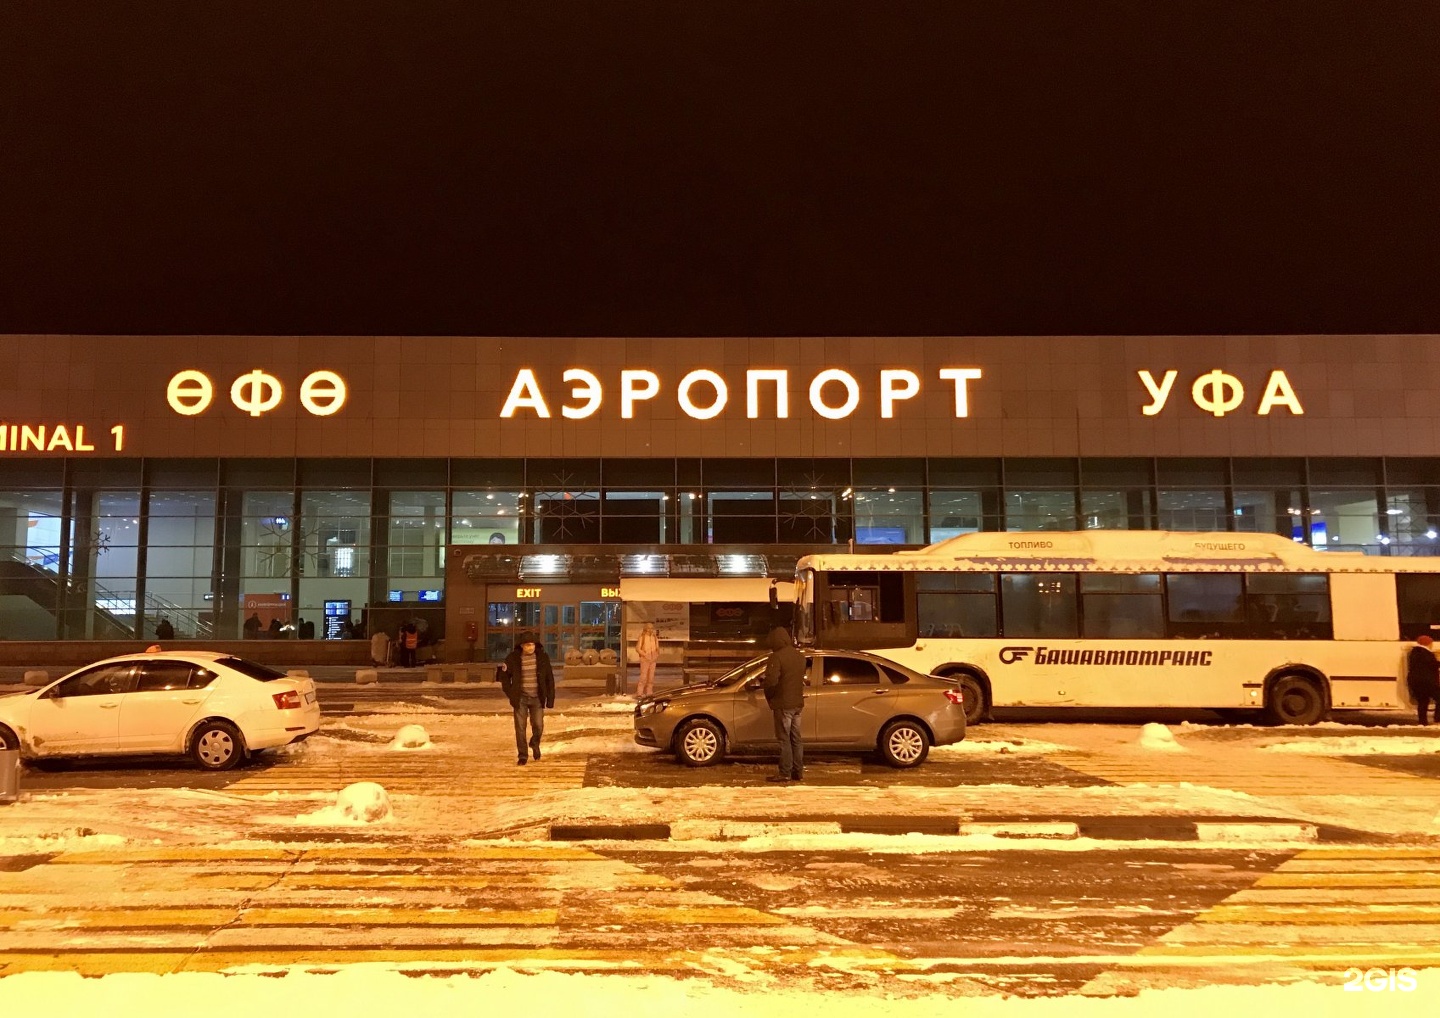 уфа международный аэропорт